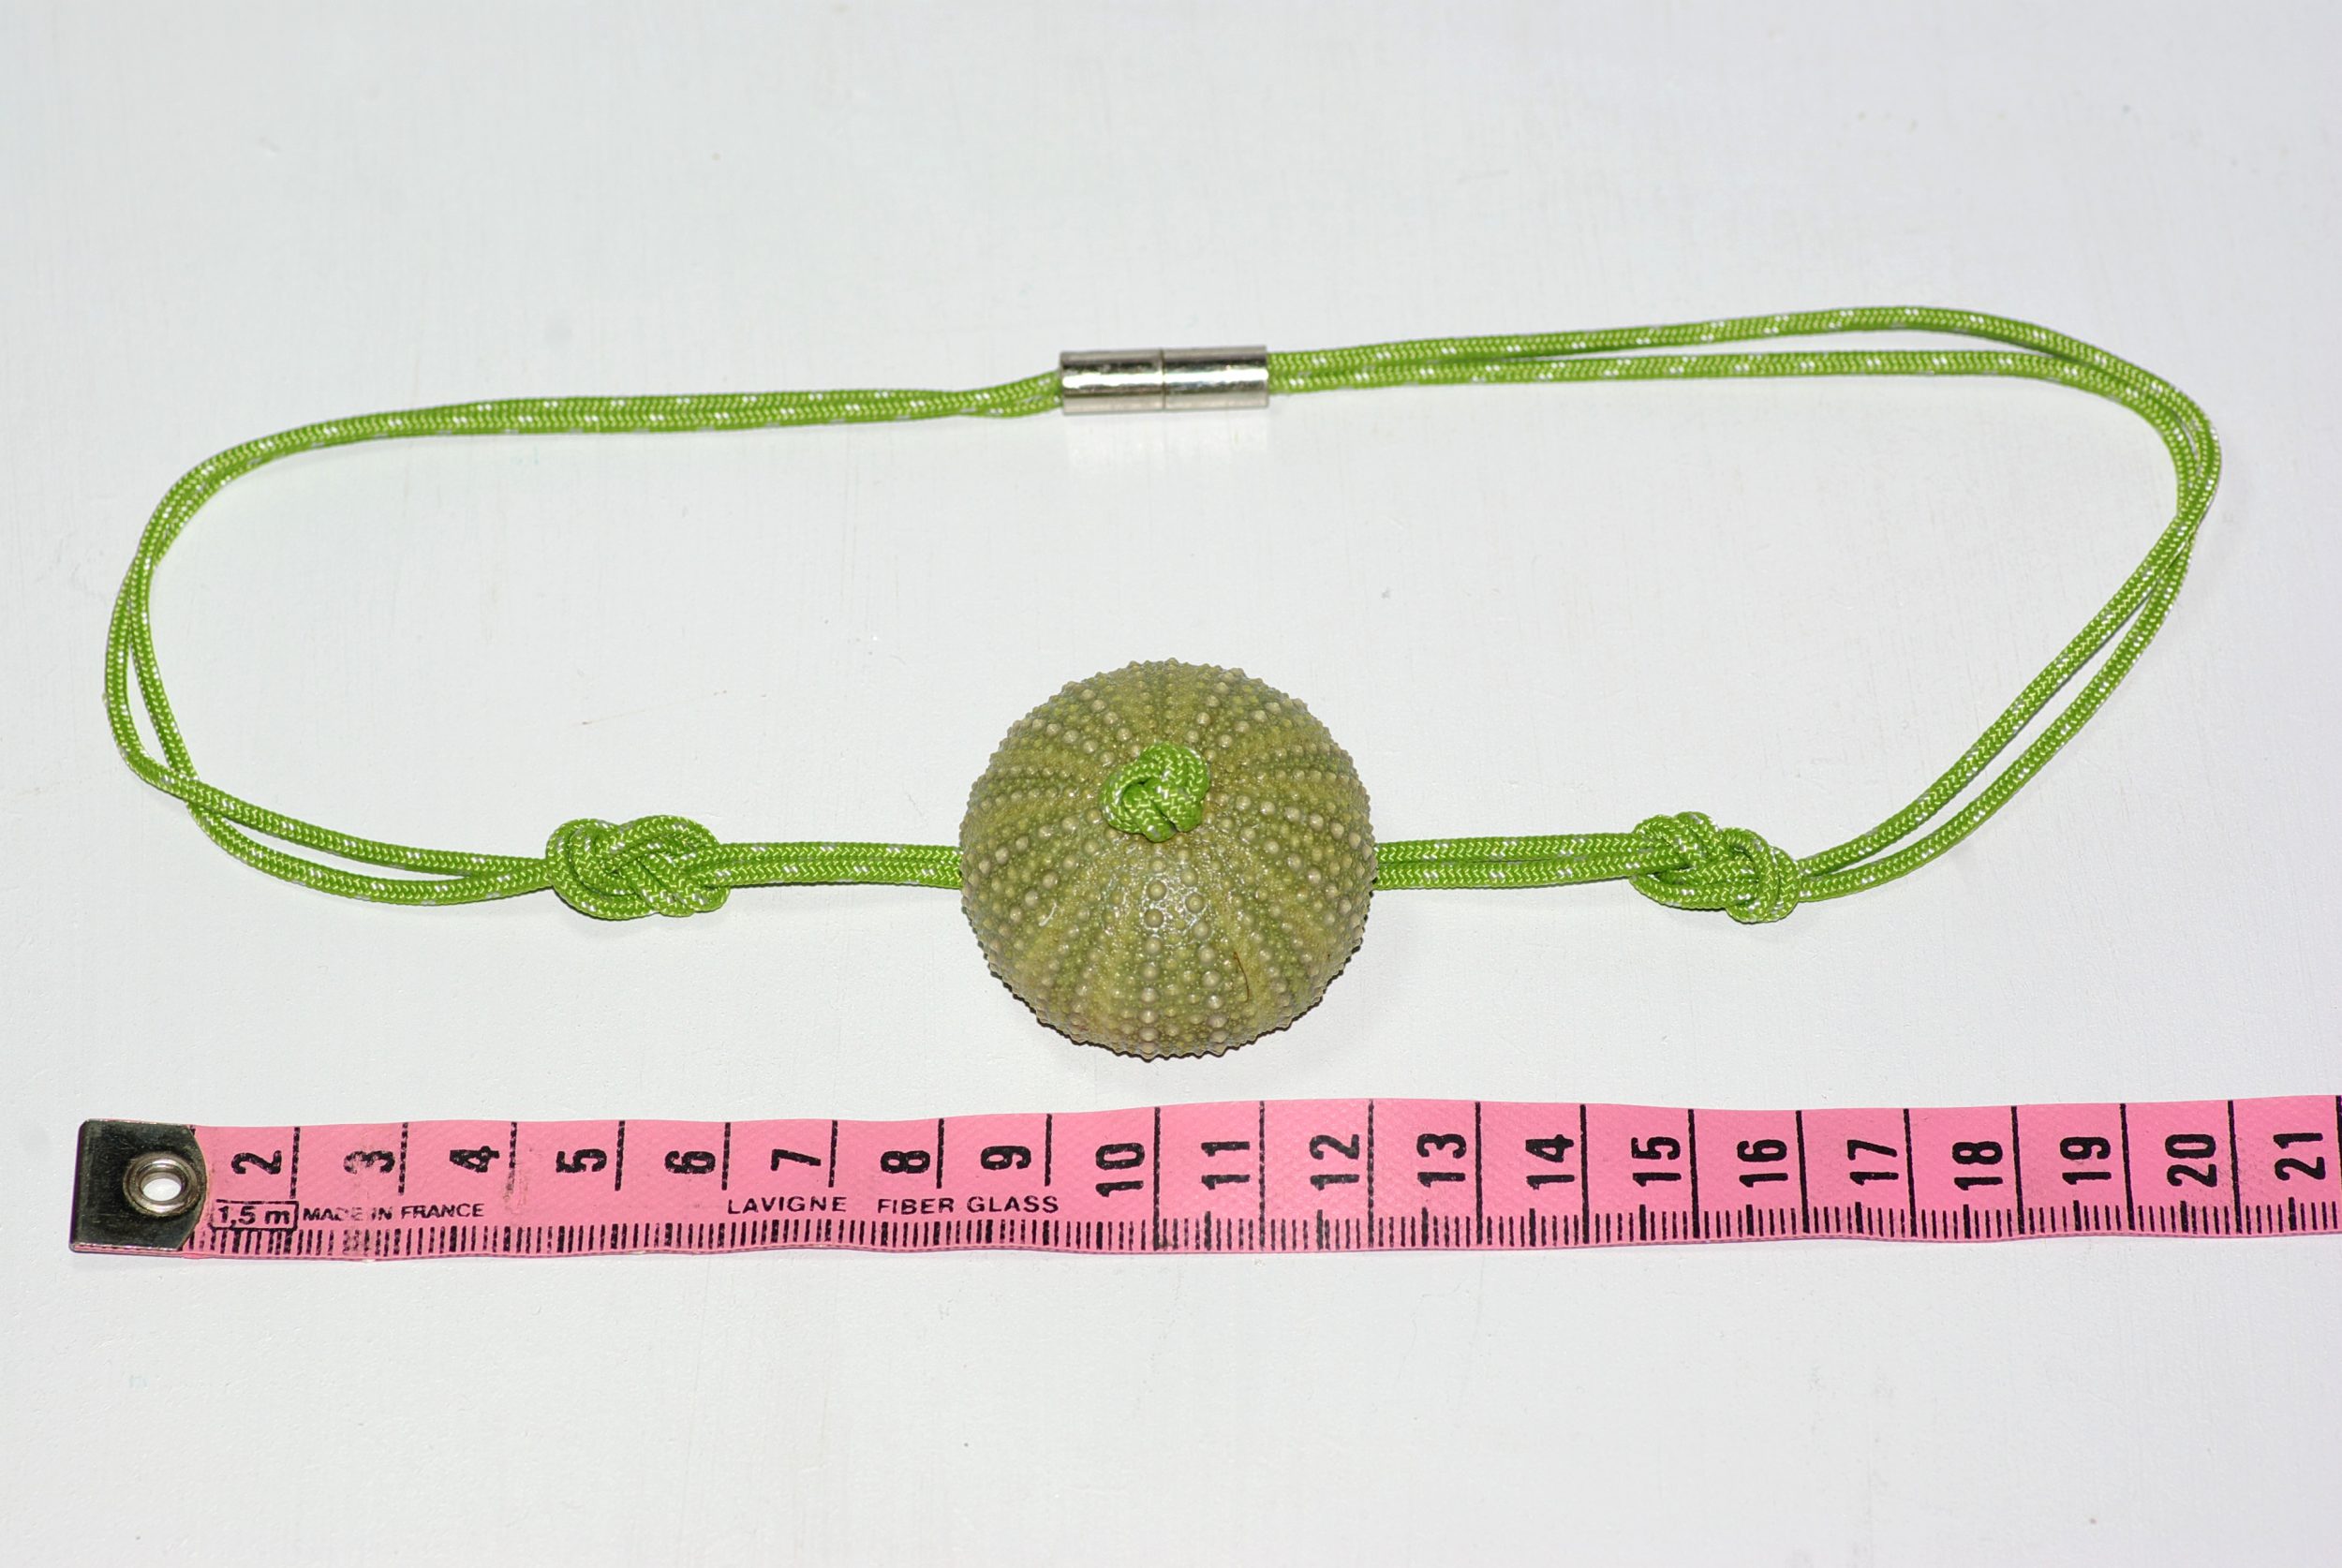 collier en cordelette marine verte nouée et pendentif oursin, prise de mesure : ourisn 4 cm.